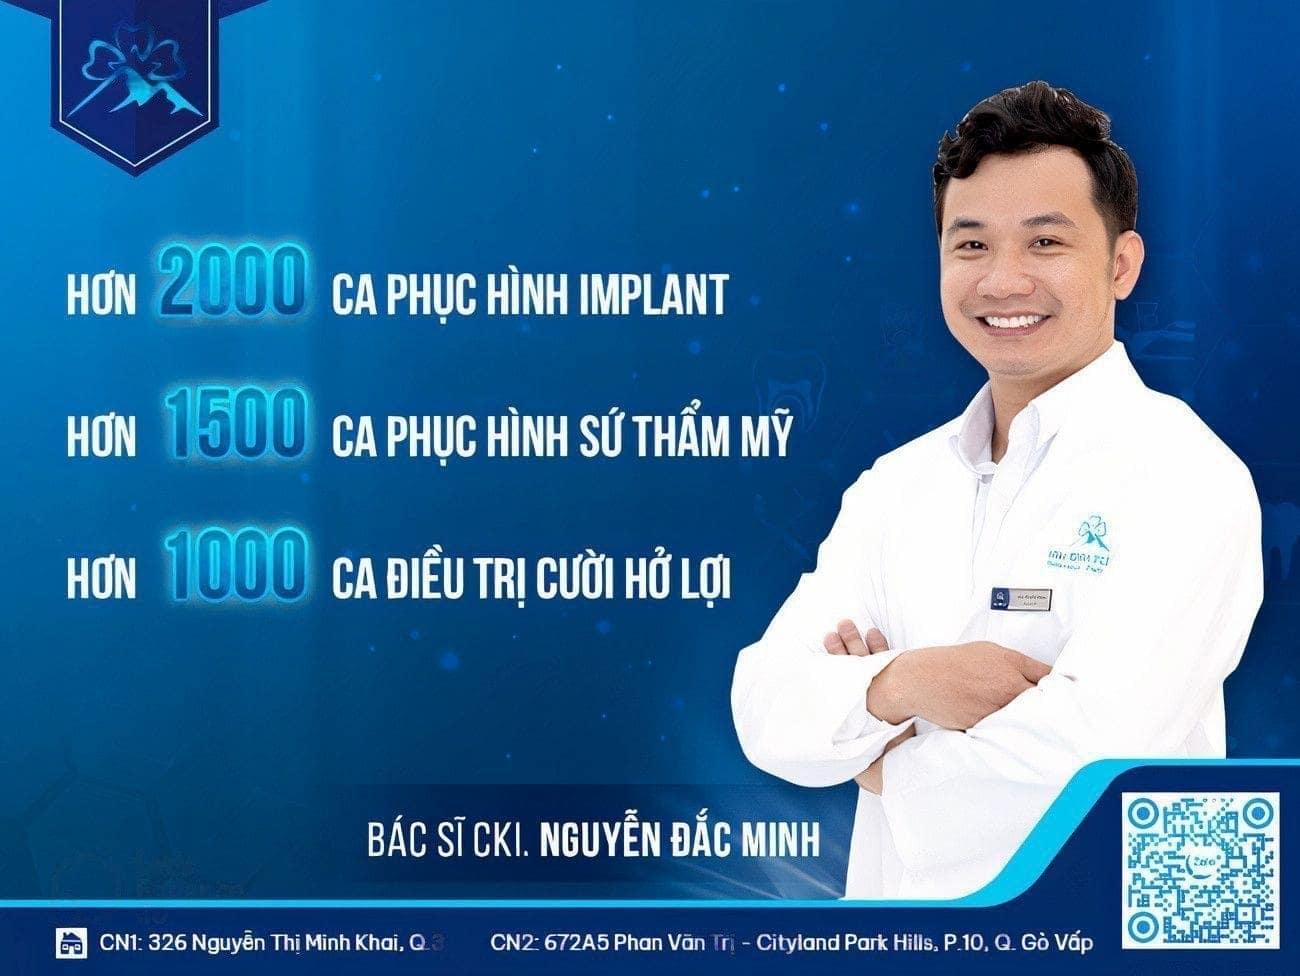 Bác sĩ Nguyễn Đắc Minh đã giúp bạn giải đáp thắc mắc: "Nên cấy bao nhiêu trụ Implant trên hàm thì tốt nhất?"